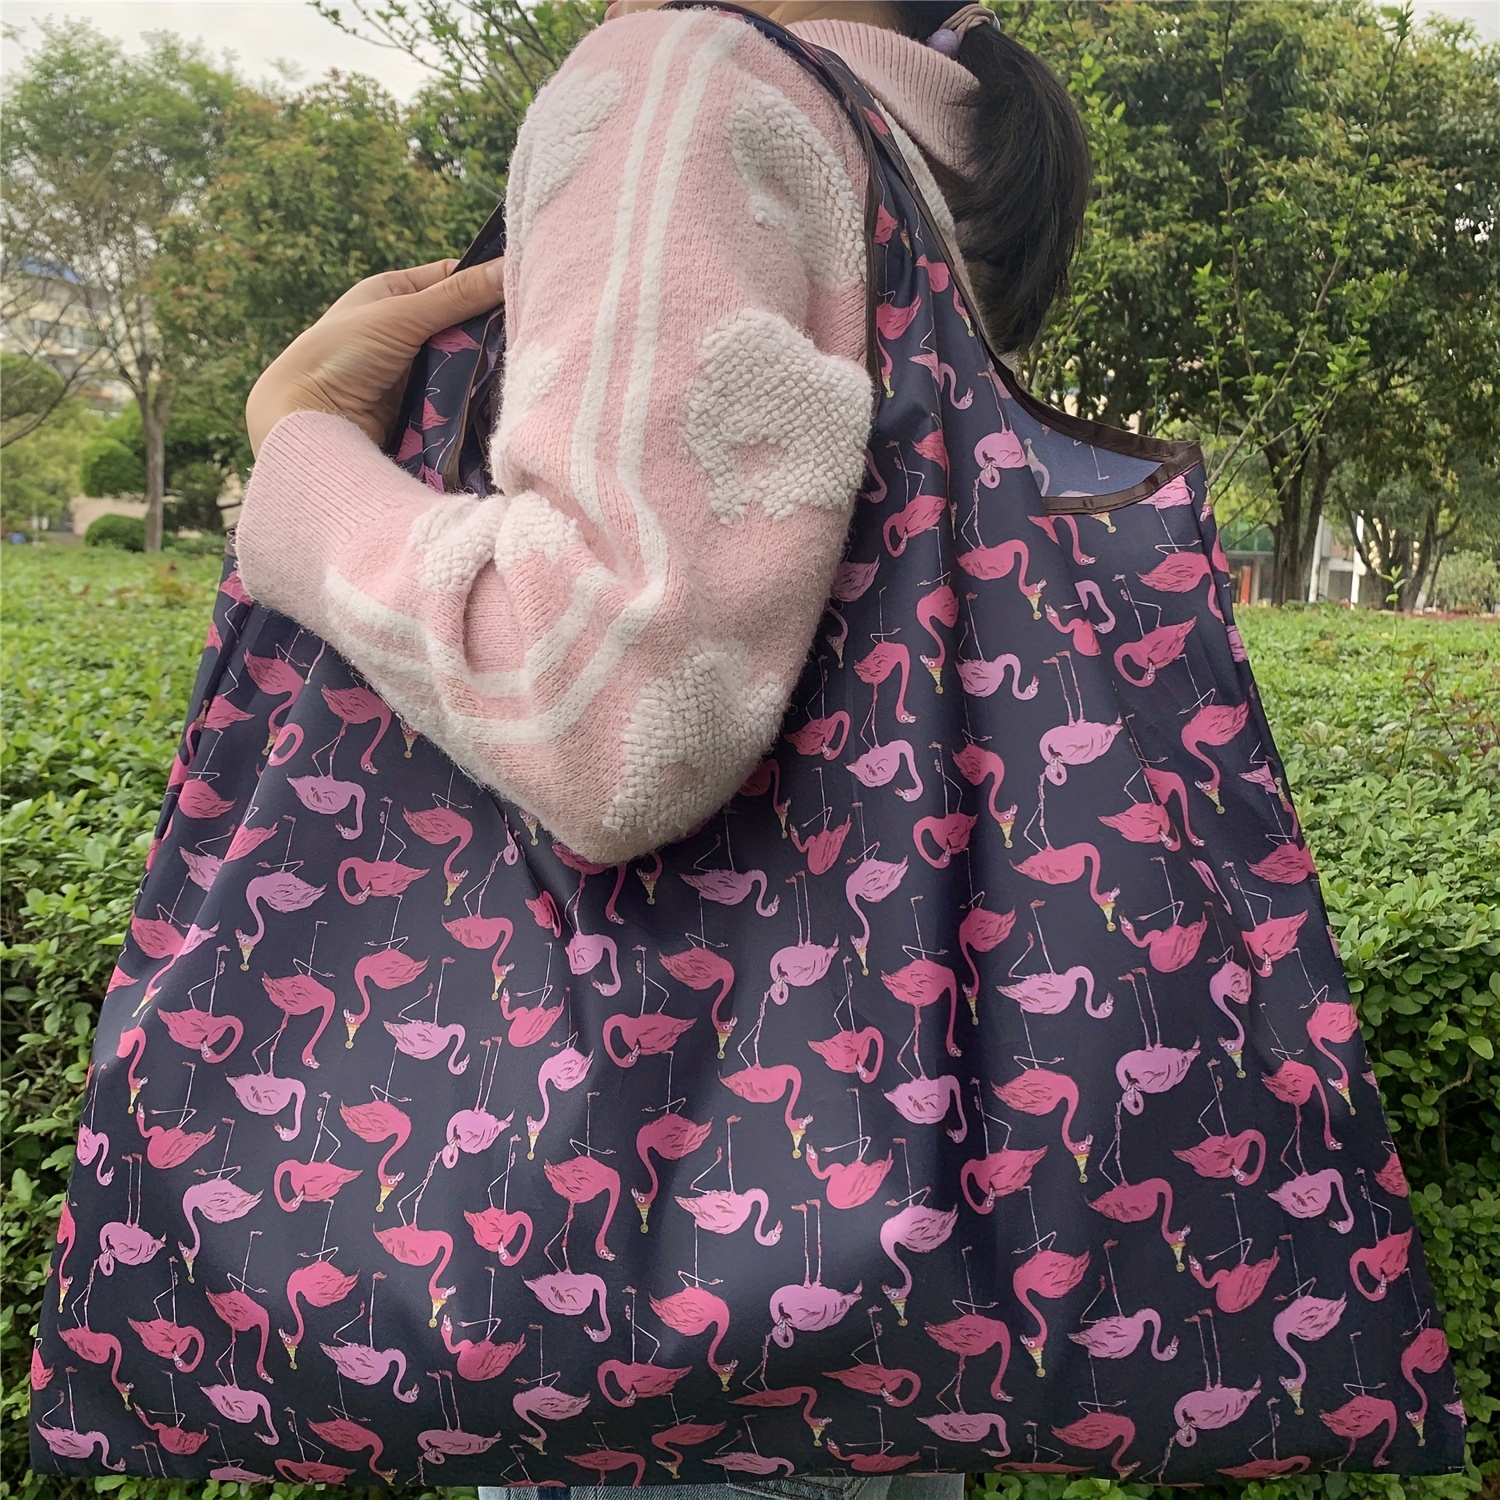 

All Over Flamingo Print Shoulder Bag, Versatile Shopper Bag, Lightweight Versatile Storage Bag